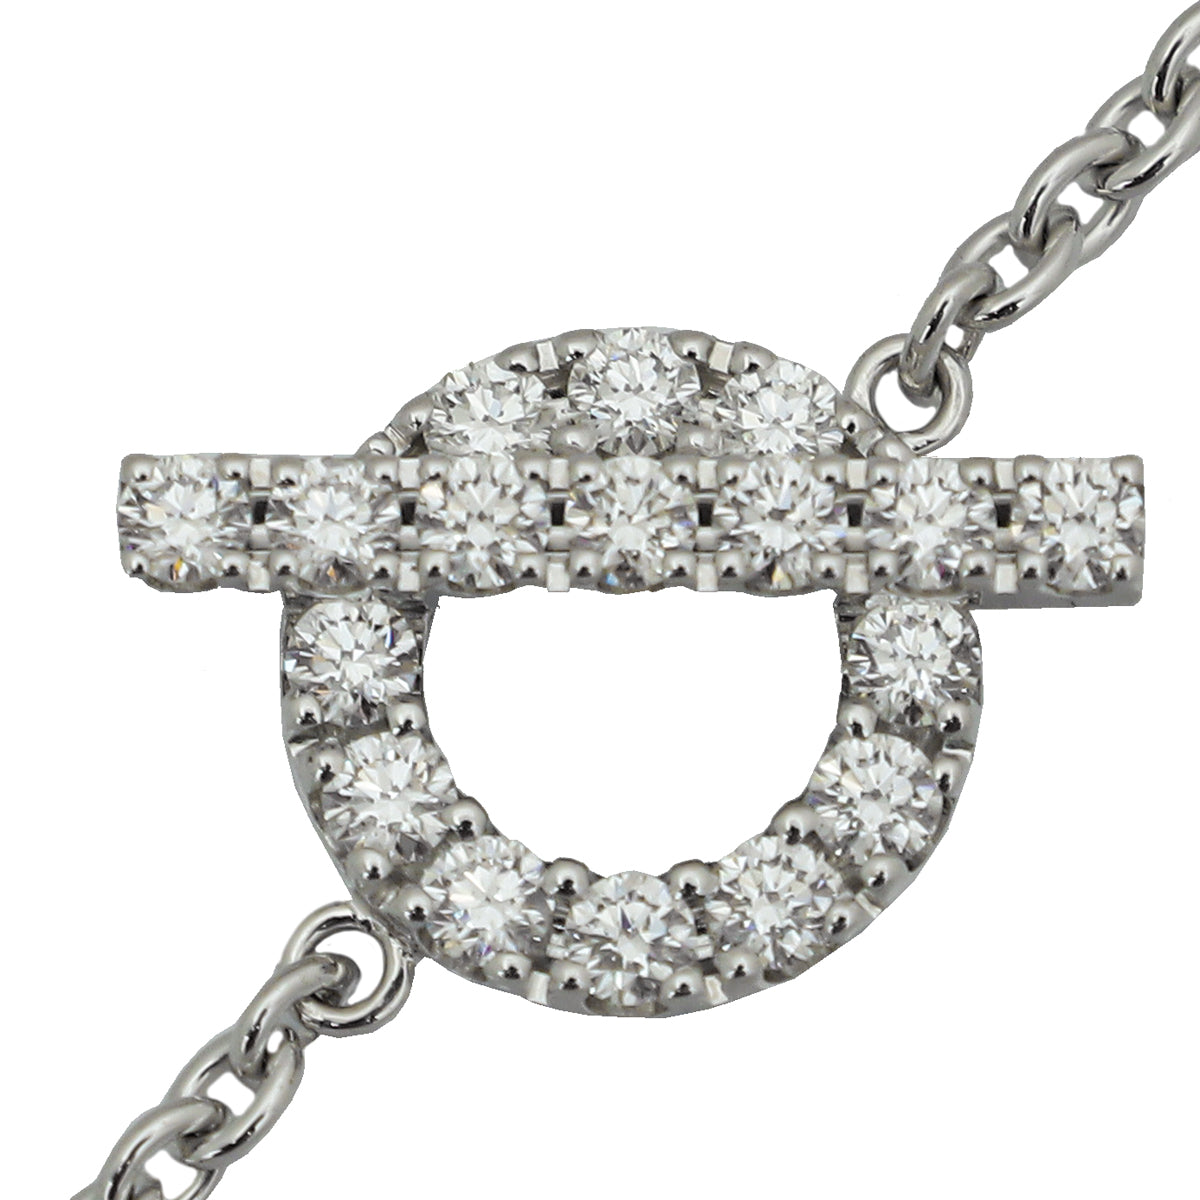 Hermes 18K White Gold Diamond Finesse Bracelet